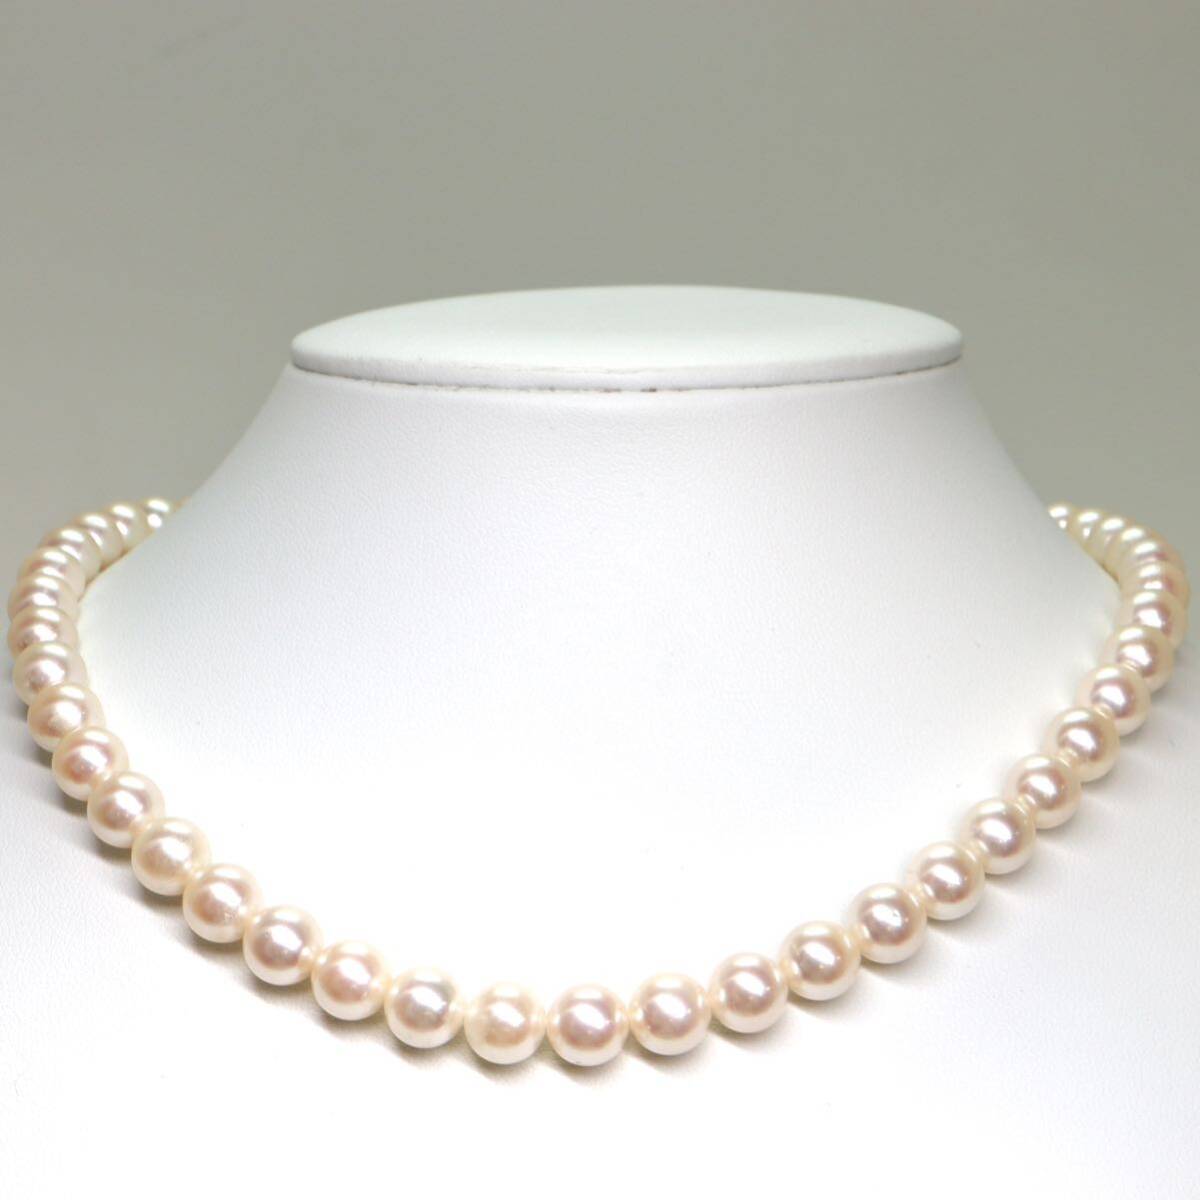 《アコヤ本真珠ネックレス》A 約8.0-8.5mm珠 43.8g 約42cm pearl necklace ジュエリー jewelry EA0/EA5の画像2